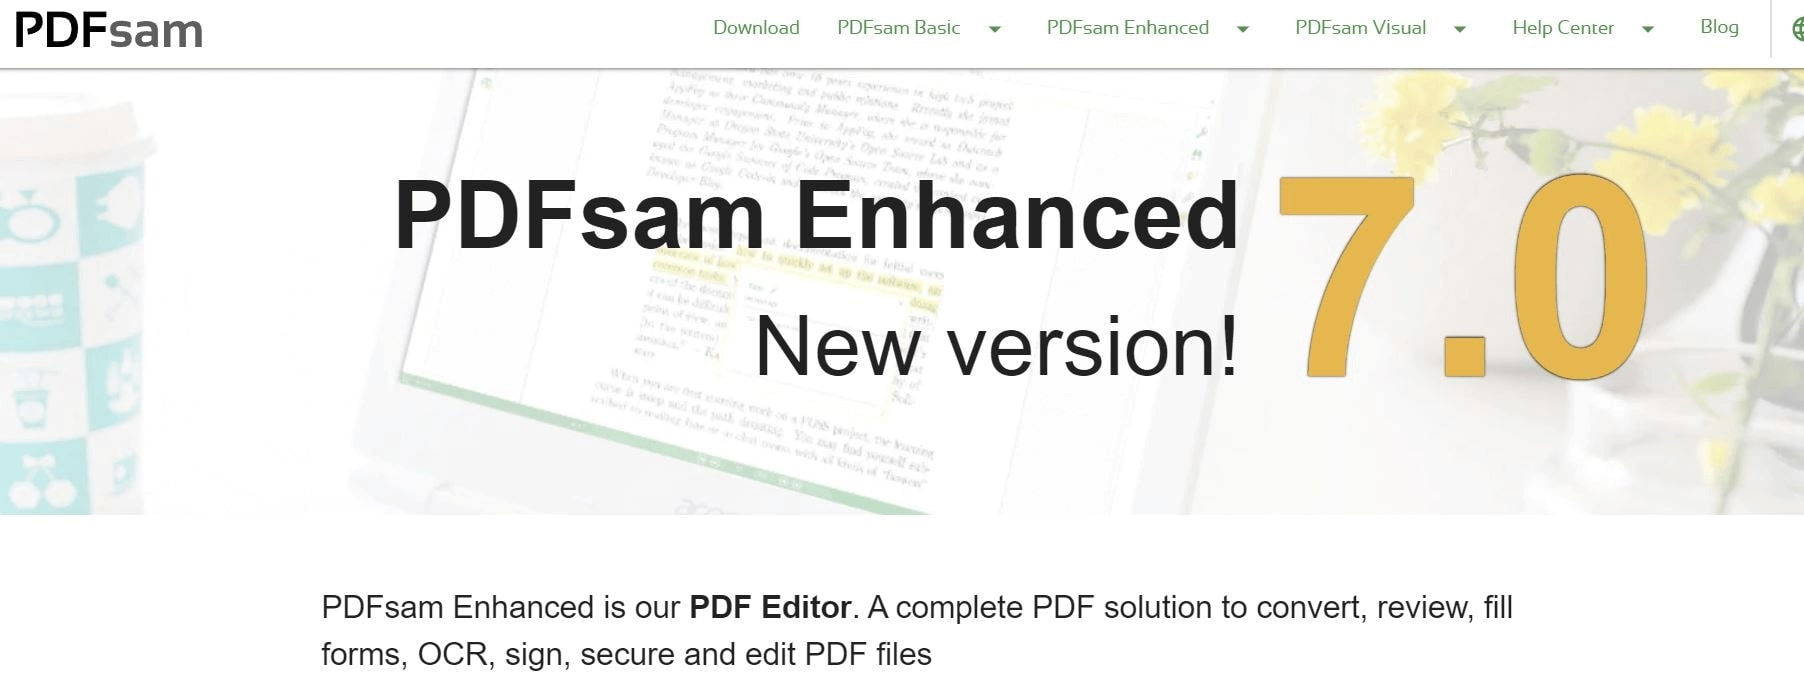 PDFsam Interface